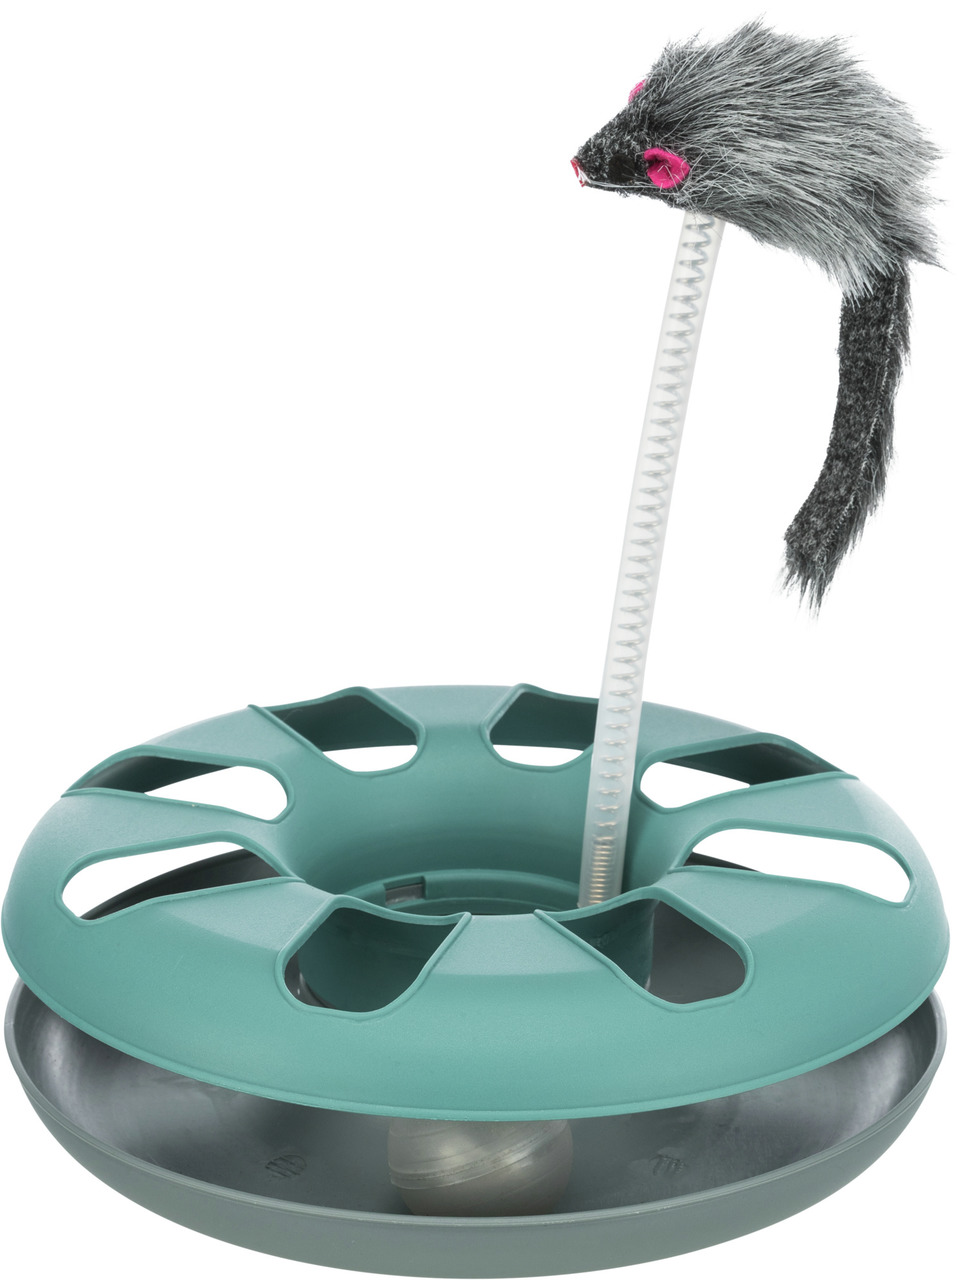 TRIXIE Crazy Circle mit Plüschmaus Durchmesser 24 x 29 Centimeter Katzenspielzeug